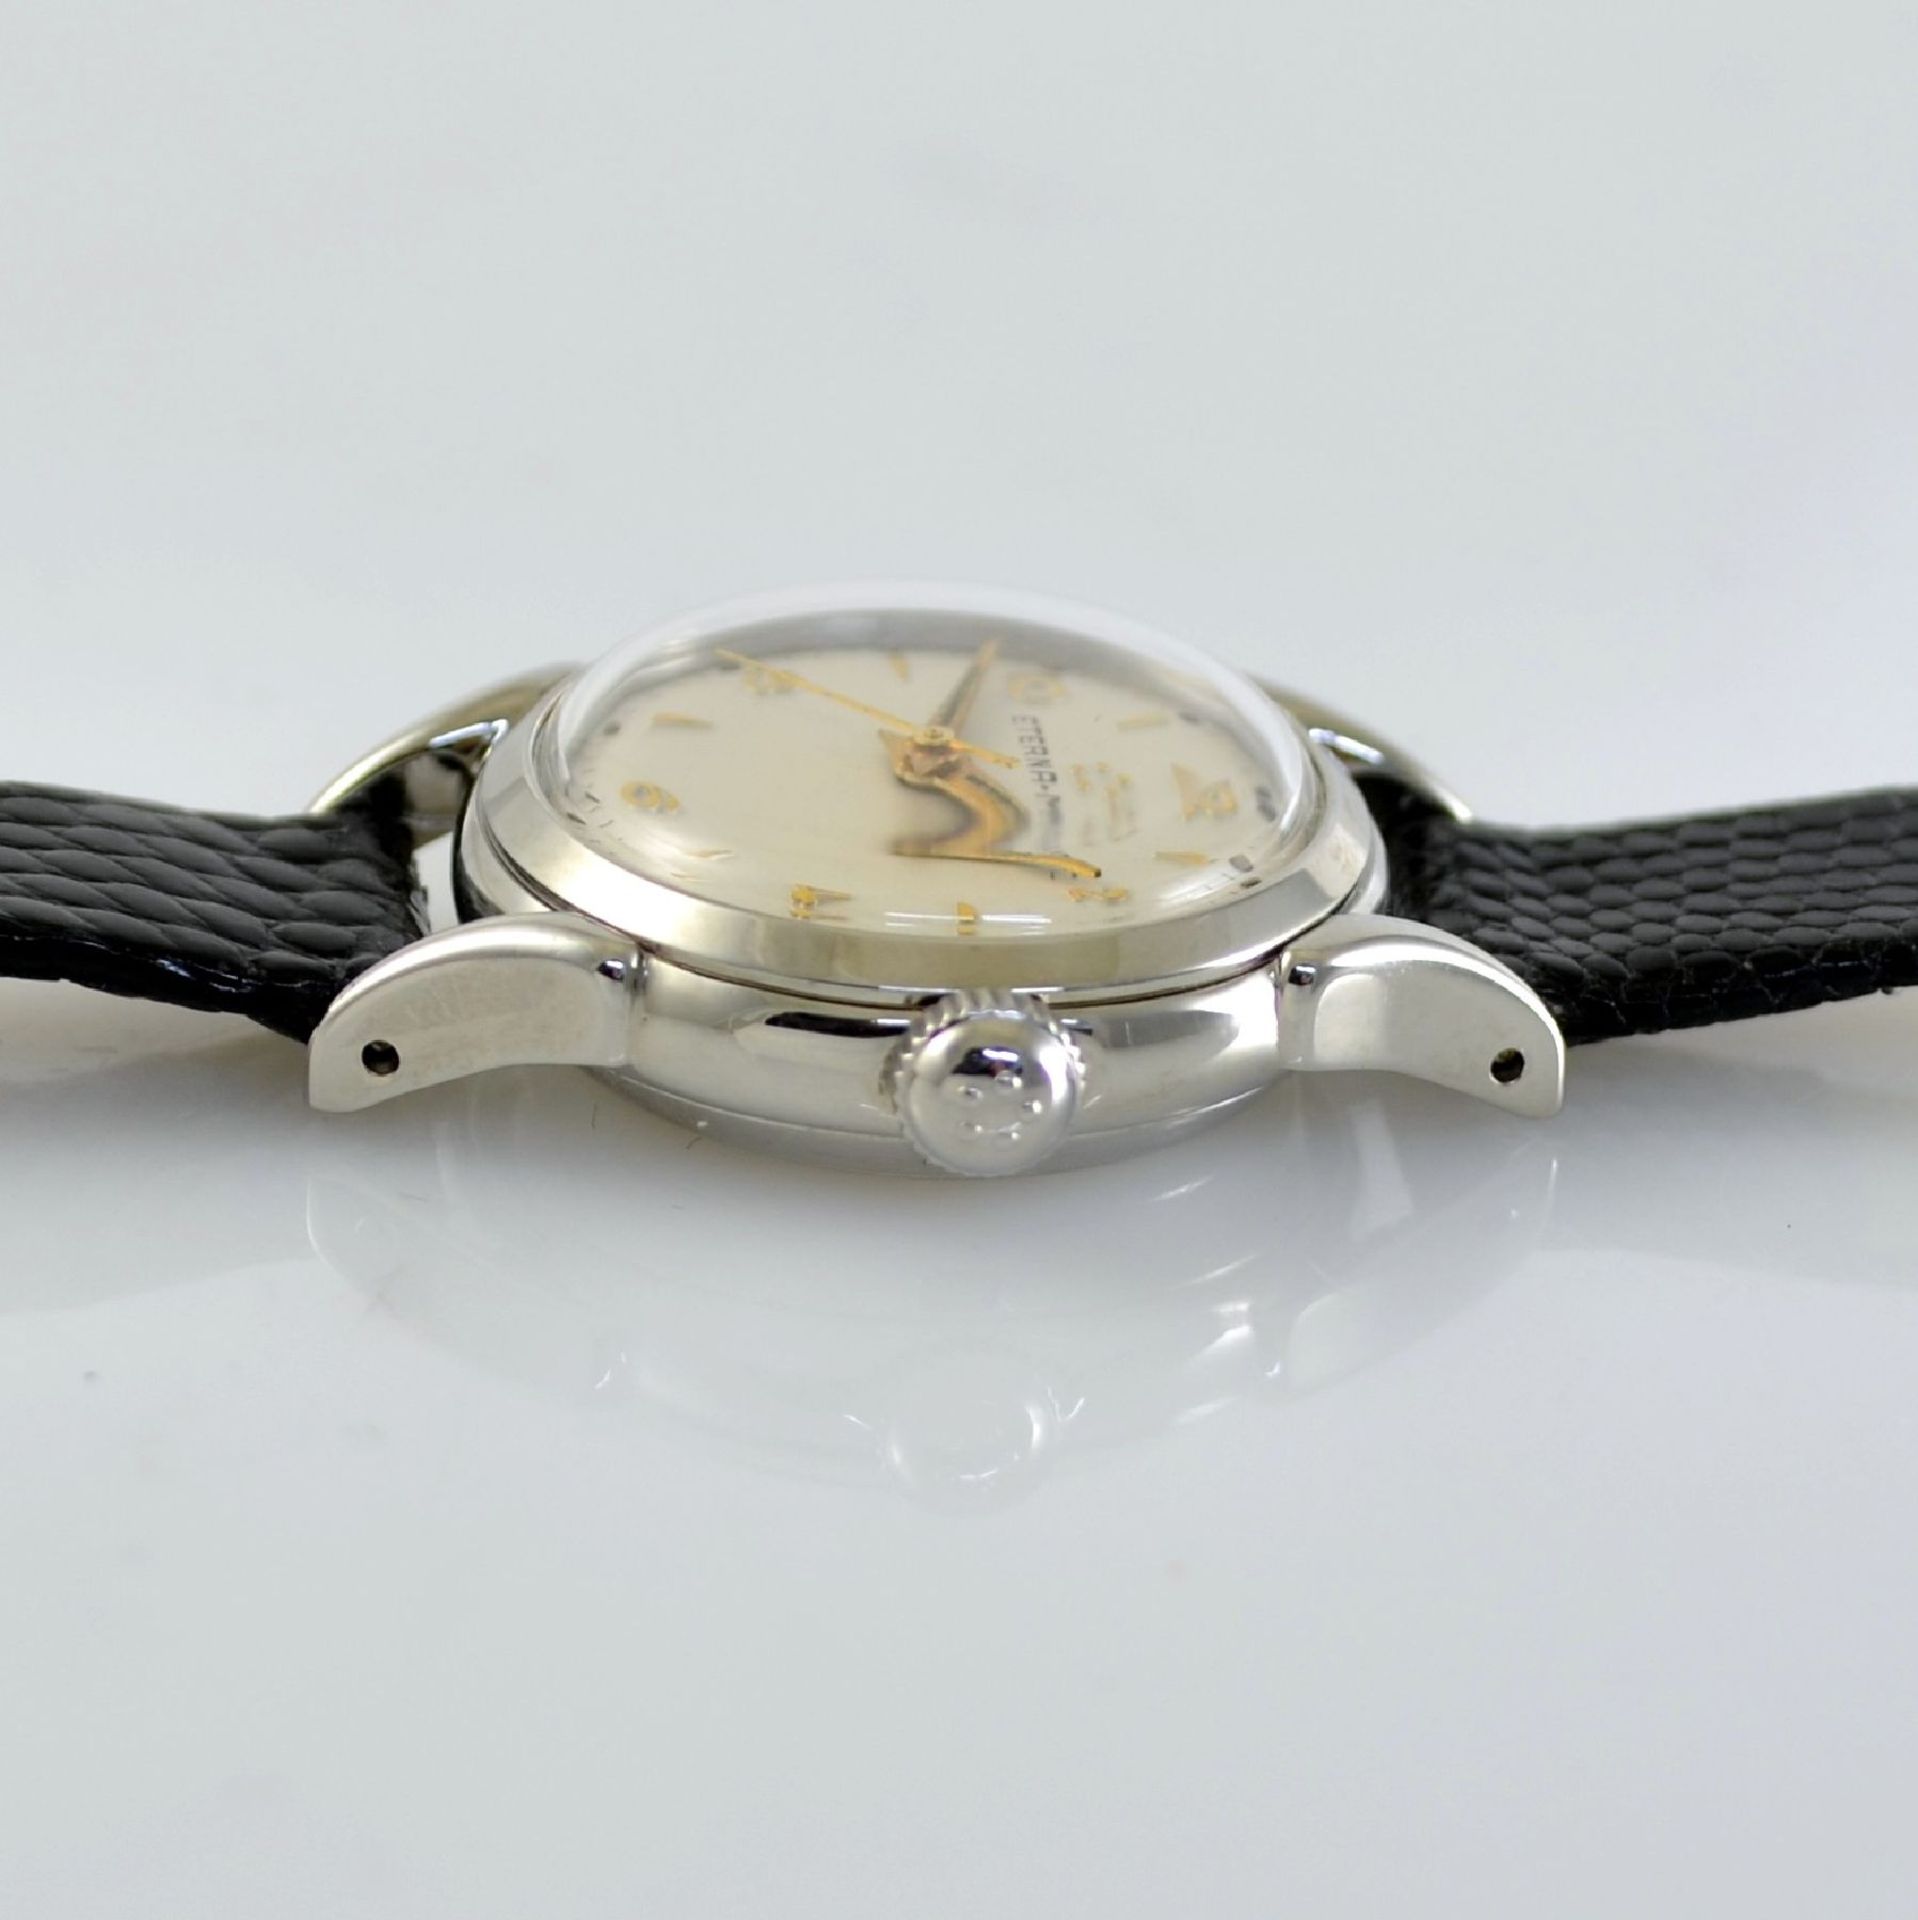 ETERNA-MATIC 2 wristwatches in steel, Switzerland around 1950, screwed down cases with unusual lugs, - Bild 10 aus 13